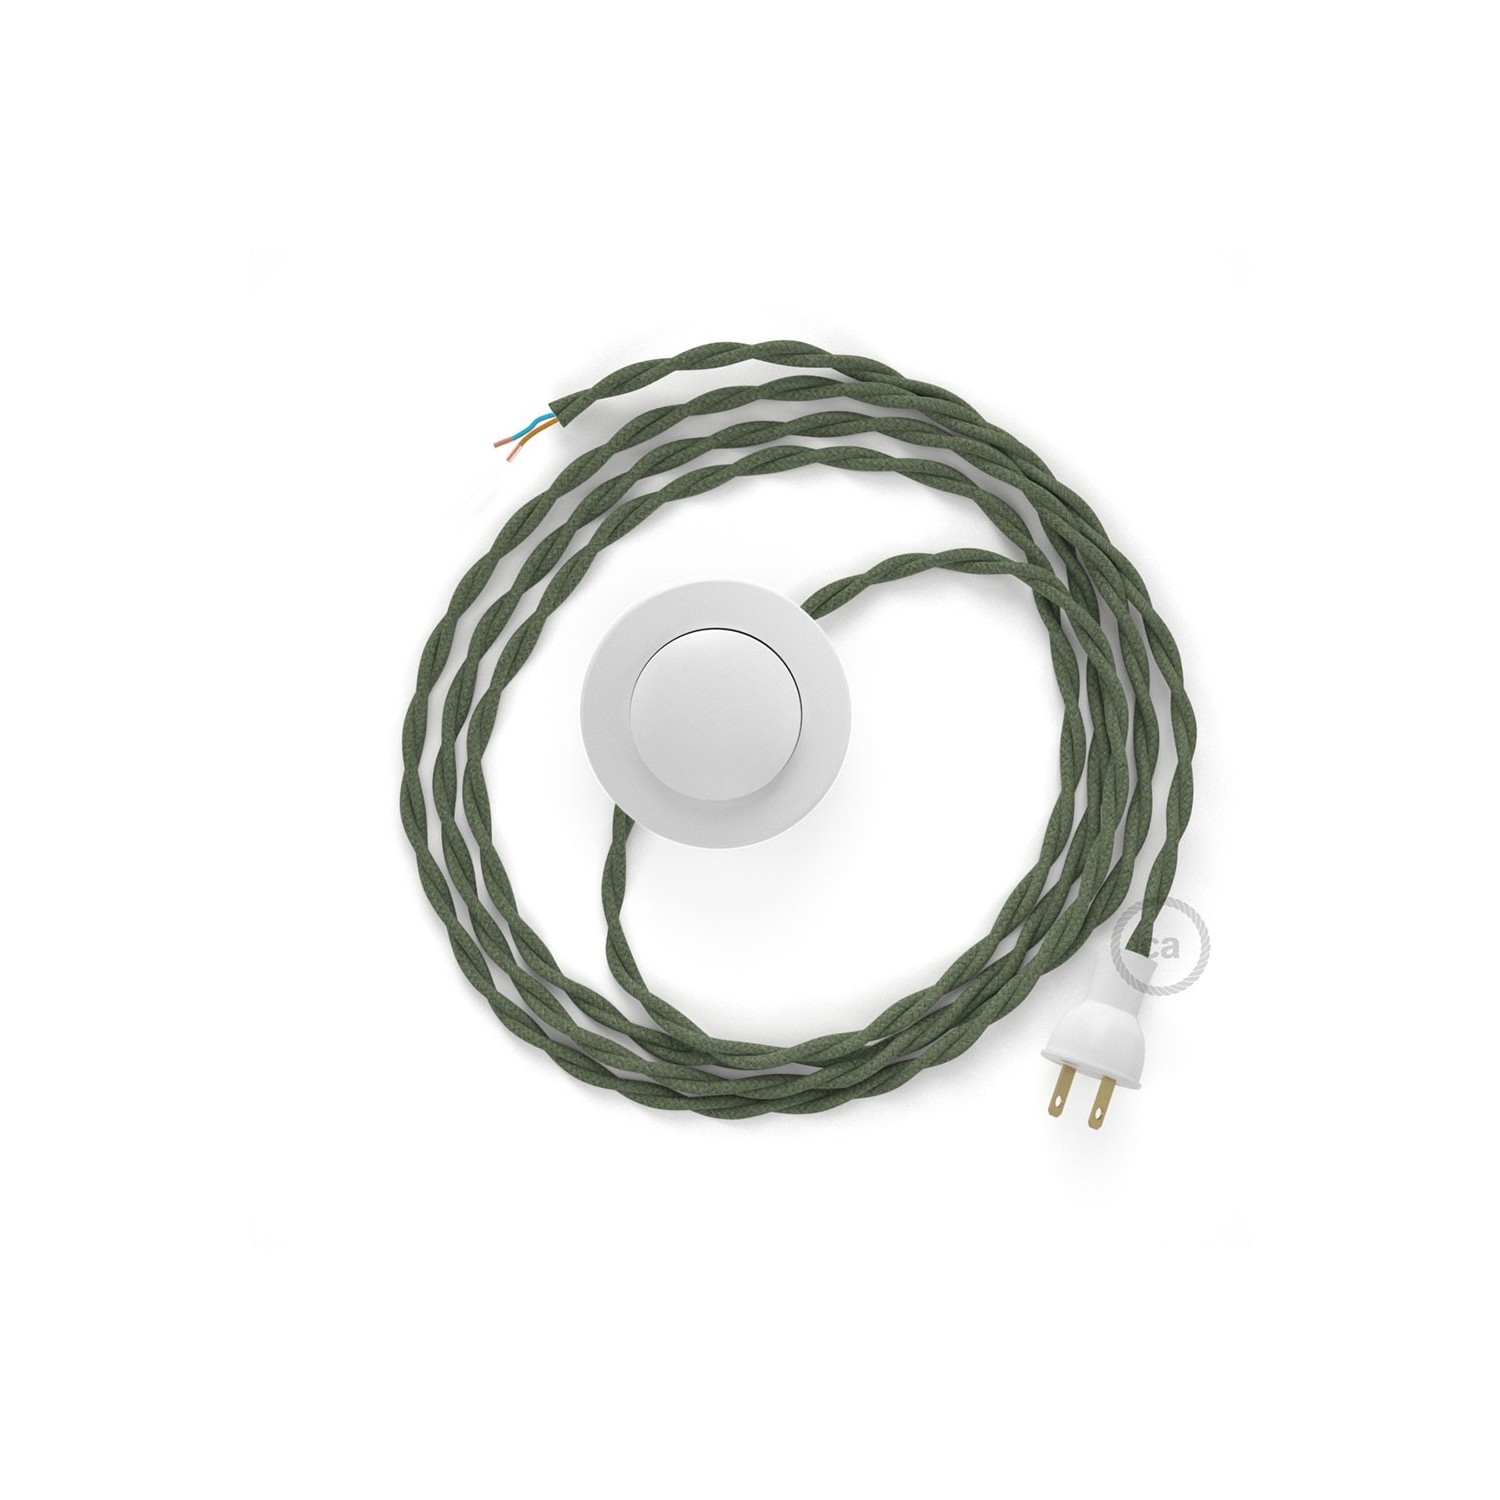 Cableado para lámpara de piso, cable TC63 Algodón Verde Gris 3 m. Elige tu el color de la clavija y del interruptor!